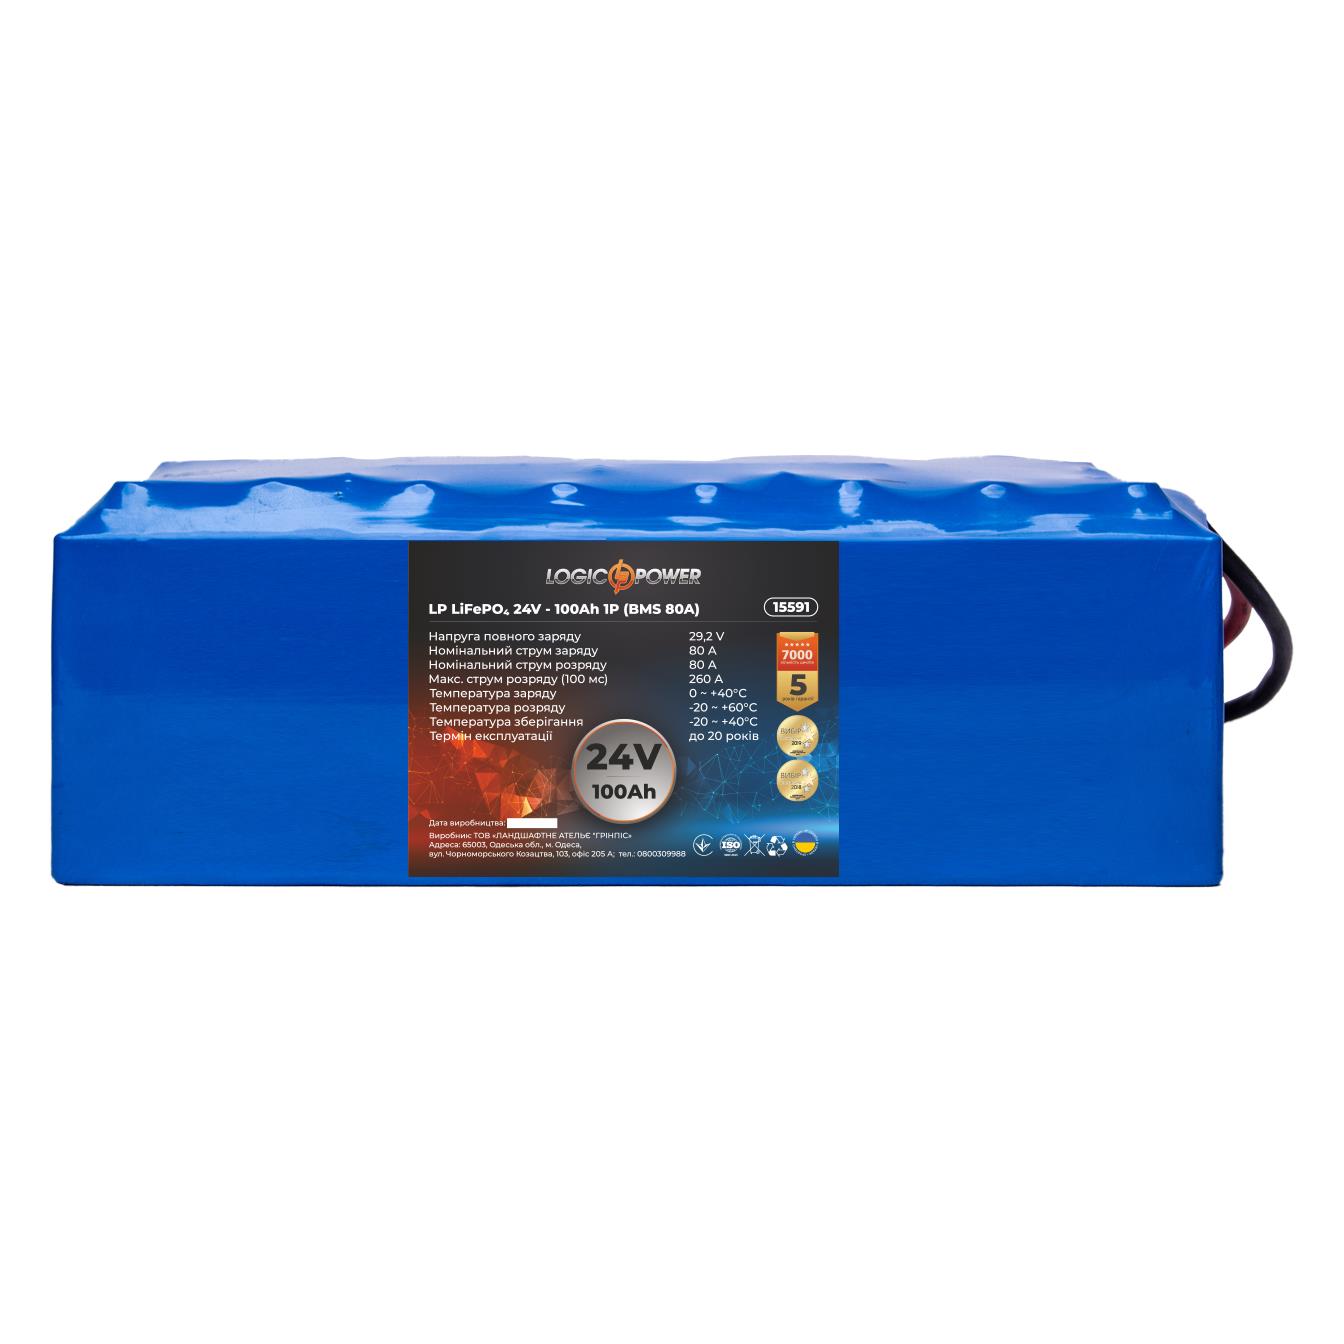 Аккумулятор литий-железо-фосфатный LogicPower LP LiFePO4 24V - 100 Ah (BMS 80A) (15591) в интернет-магазине, главное фото